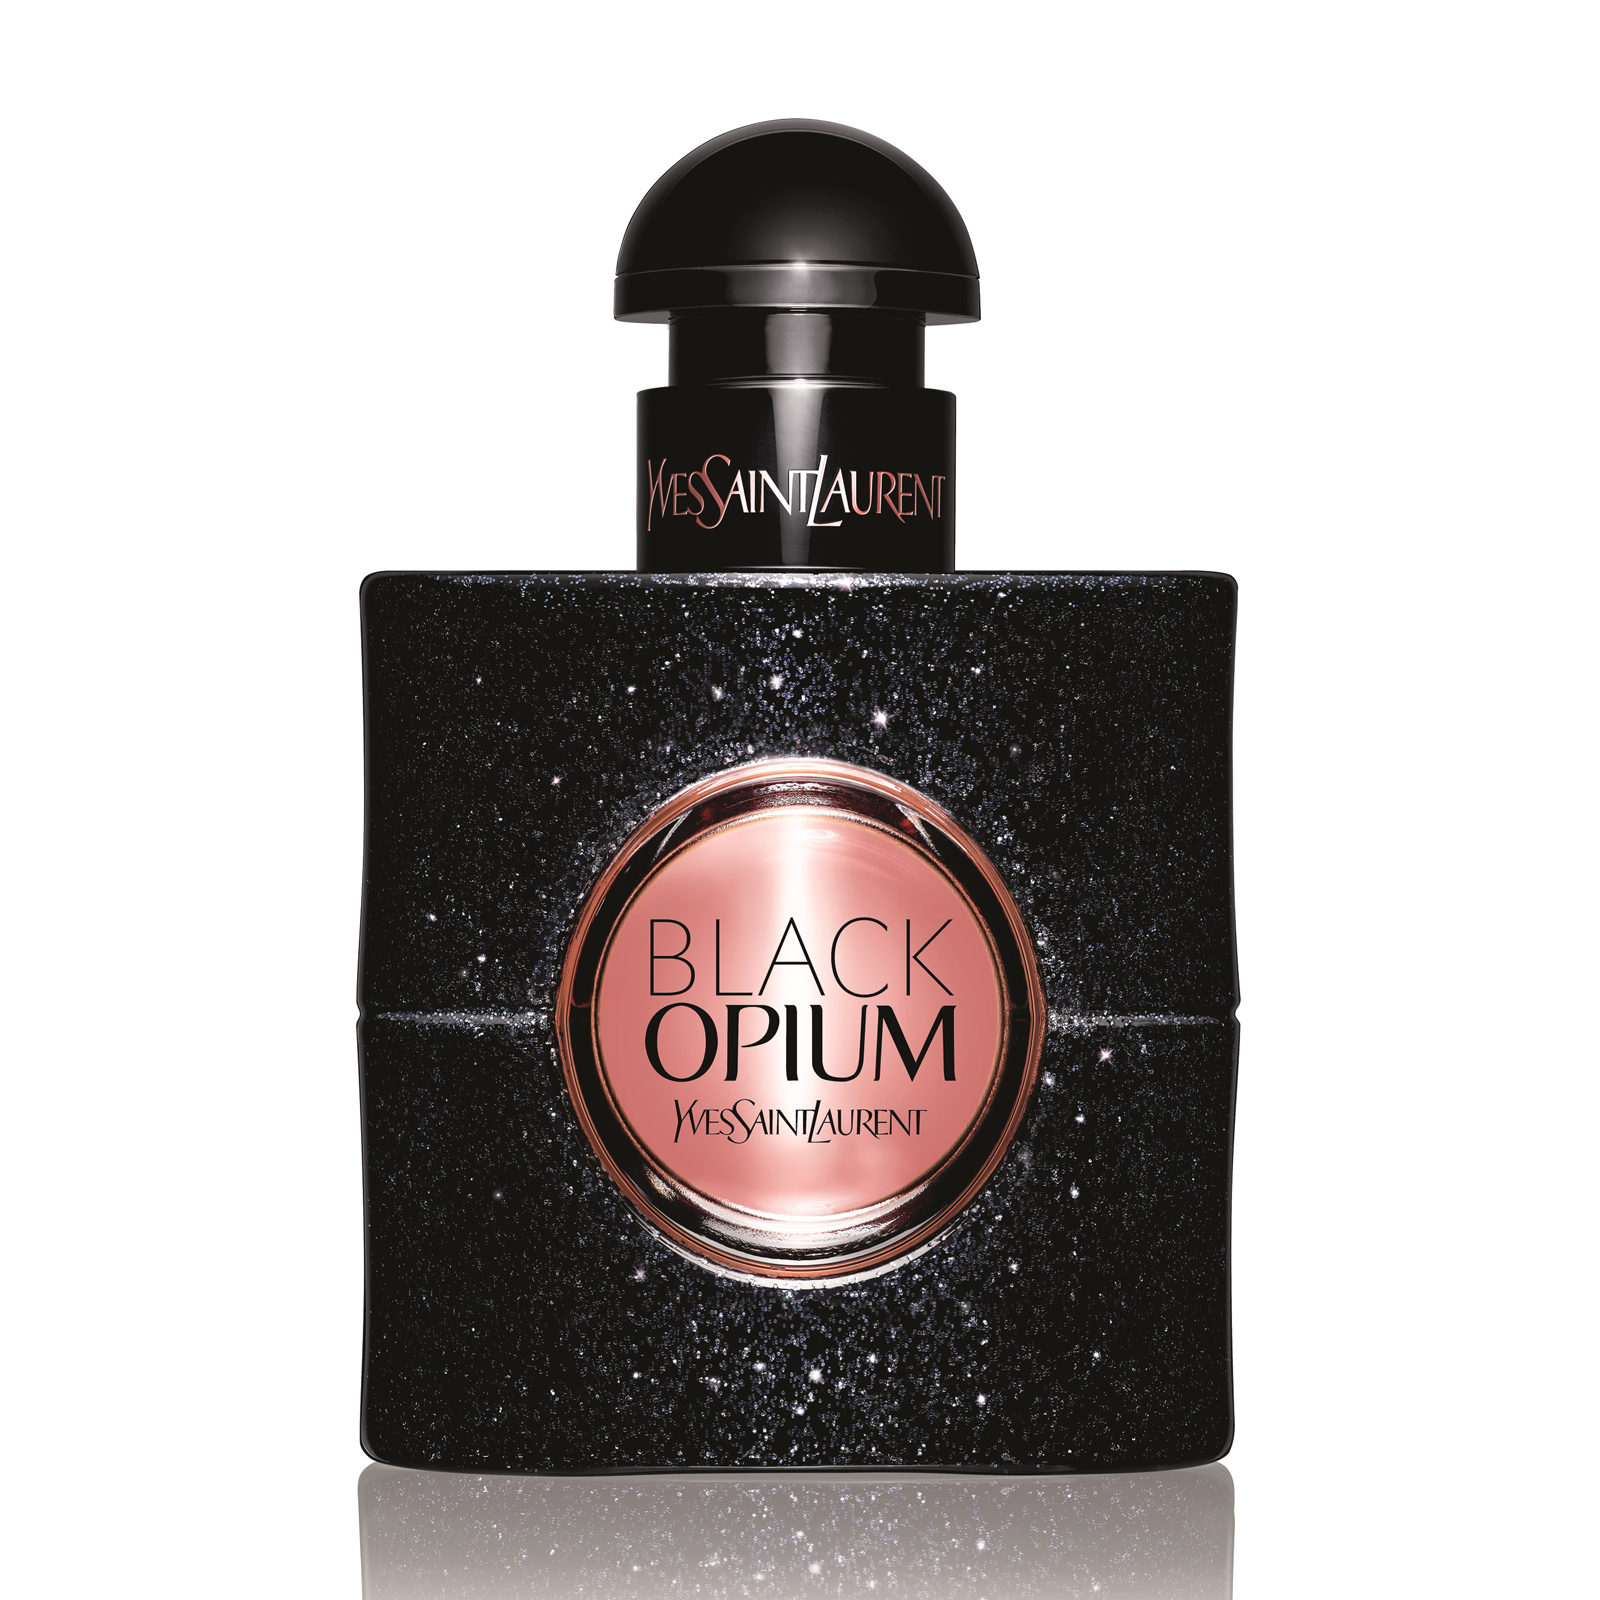 Yves Saint Laurent / Black Opium - Eau de Parfum 50 ml - ShopMania